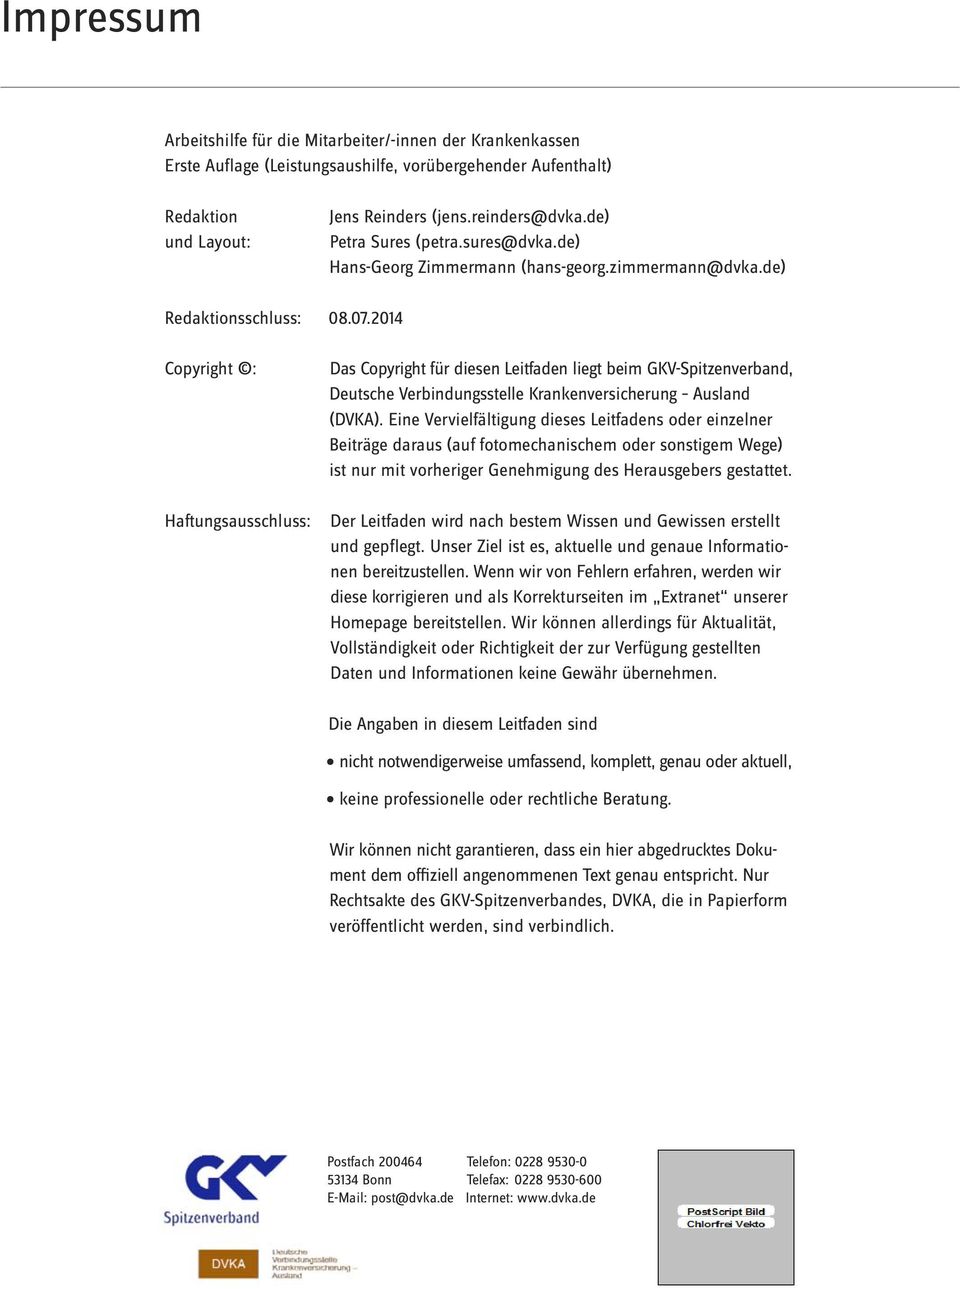 2014 Copyright : Haftungsausschluss: Das Copyright für diesen Leitfaden liegt beim GKV-Spitzenverband, Deutsche Verbindungsstelle Krankenversicherung Ausland (DVKA).